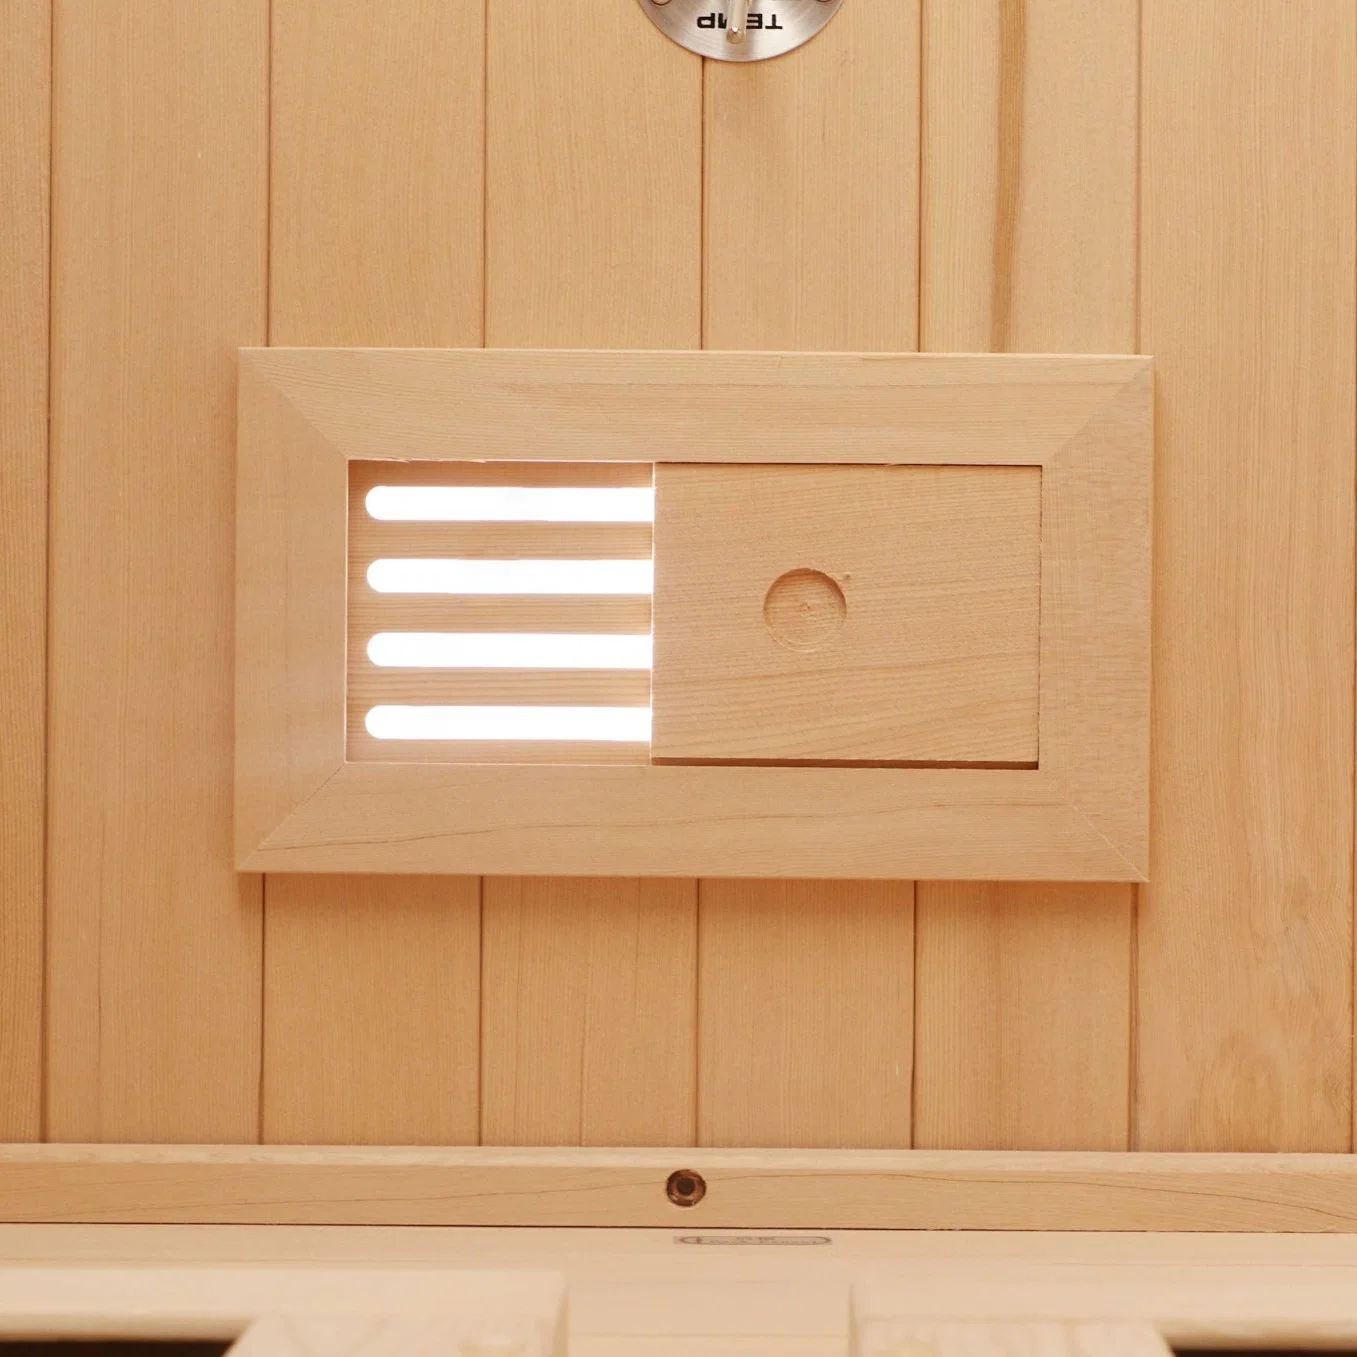 Infrarouge sauna en bois finlandais Salon de beauté de l'équipement